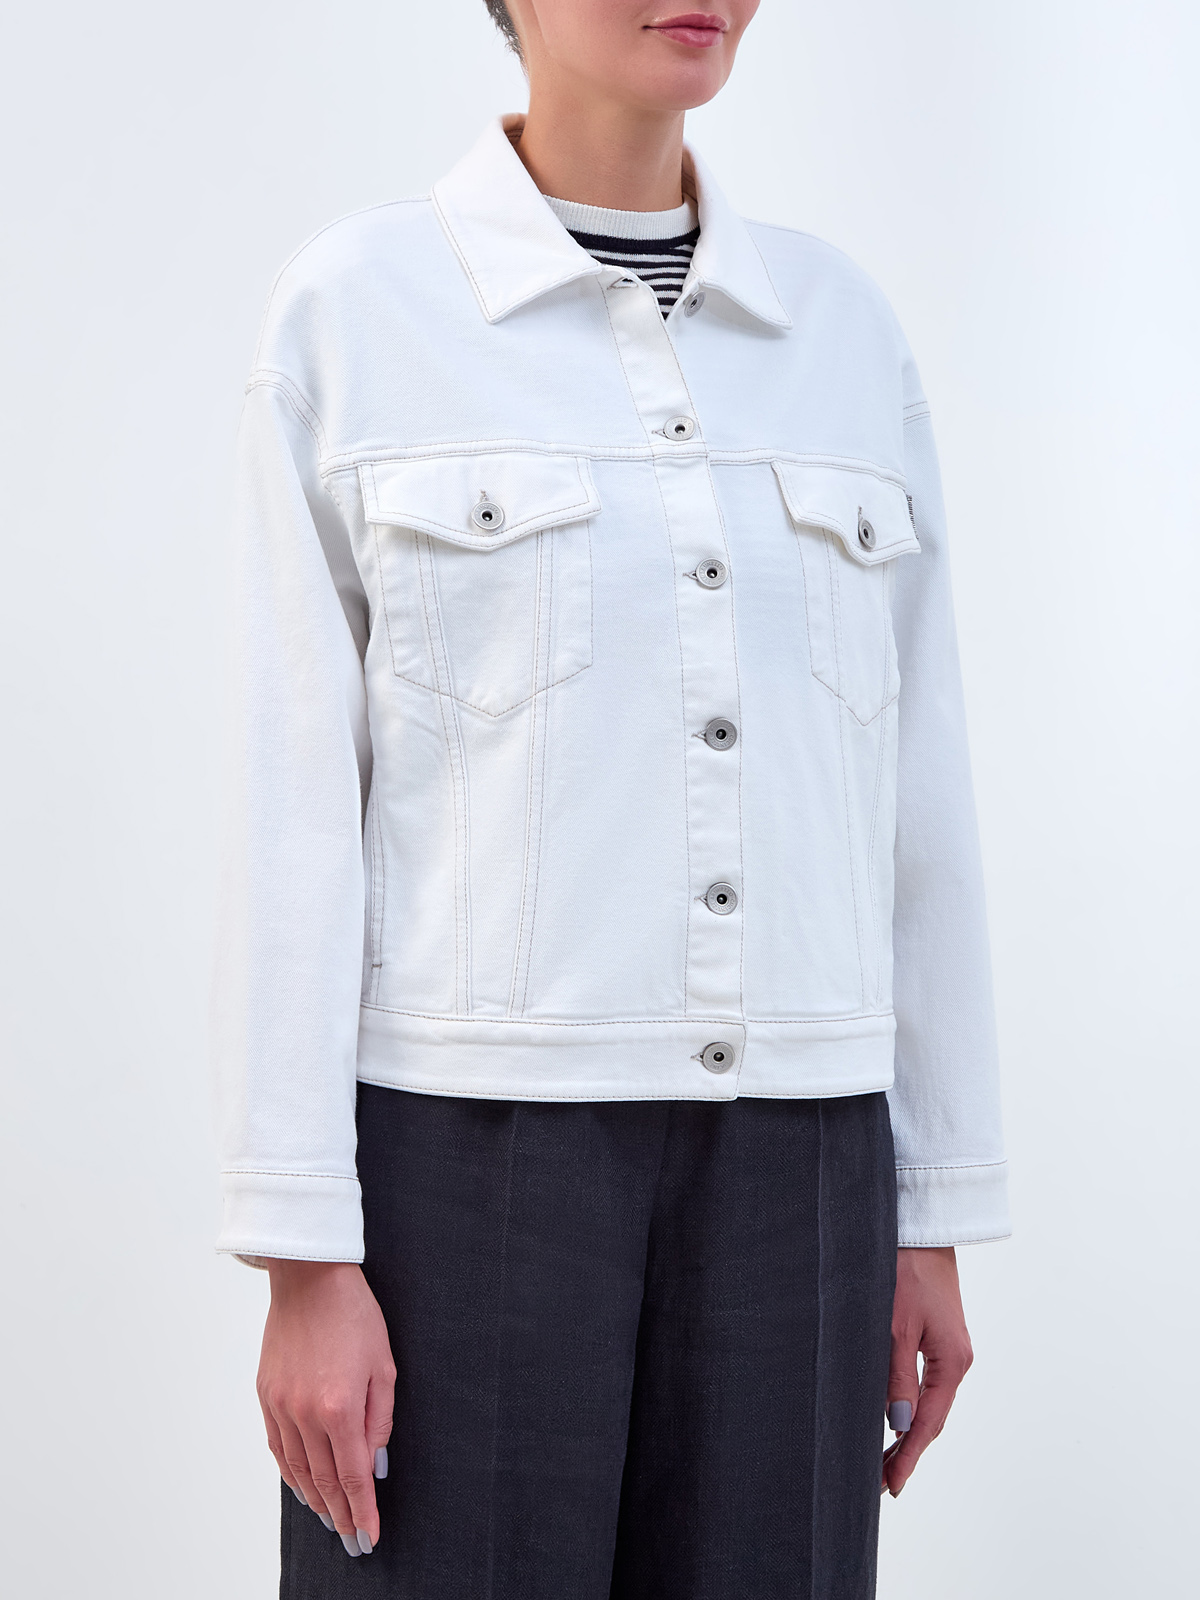 Куртка из окрашенного вручную денима с ювелирной деталью Мониль BRUNELLO CUCINELLI, цвет белый, размер 38;44 - фото 3